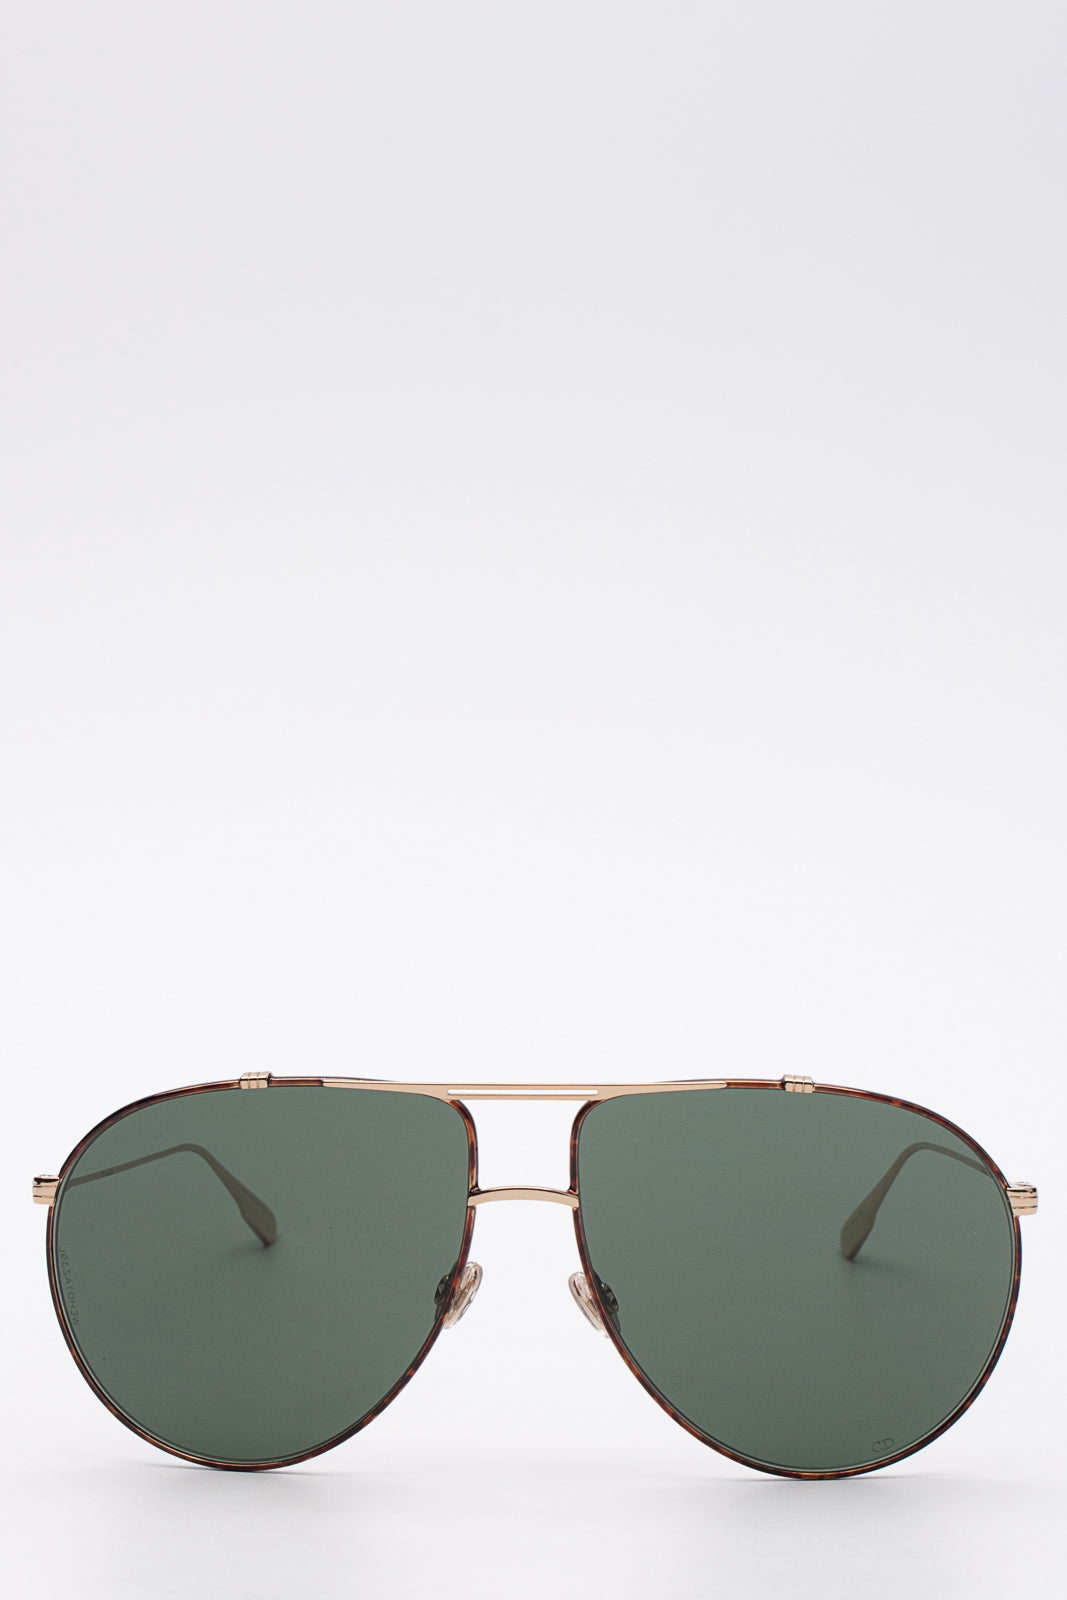 Christian Dior 2720 46 Polarised Vintage Sunglasses – Ed & Sarna Vintage  Eyewear